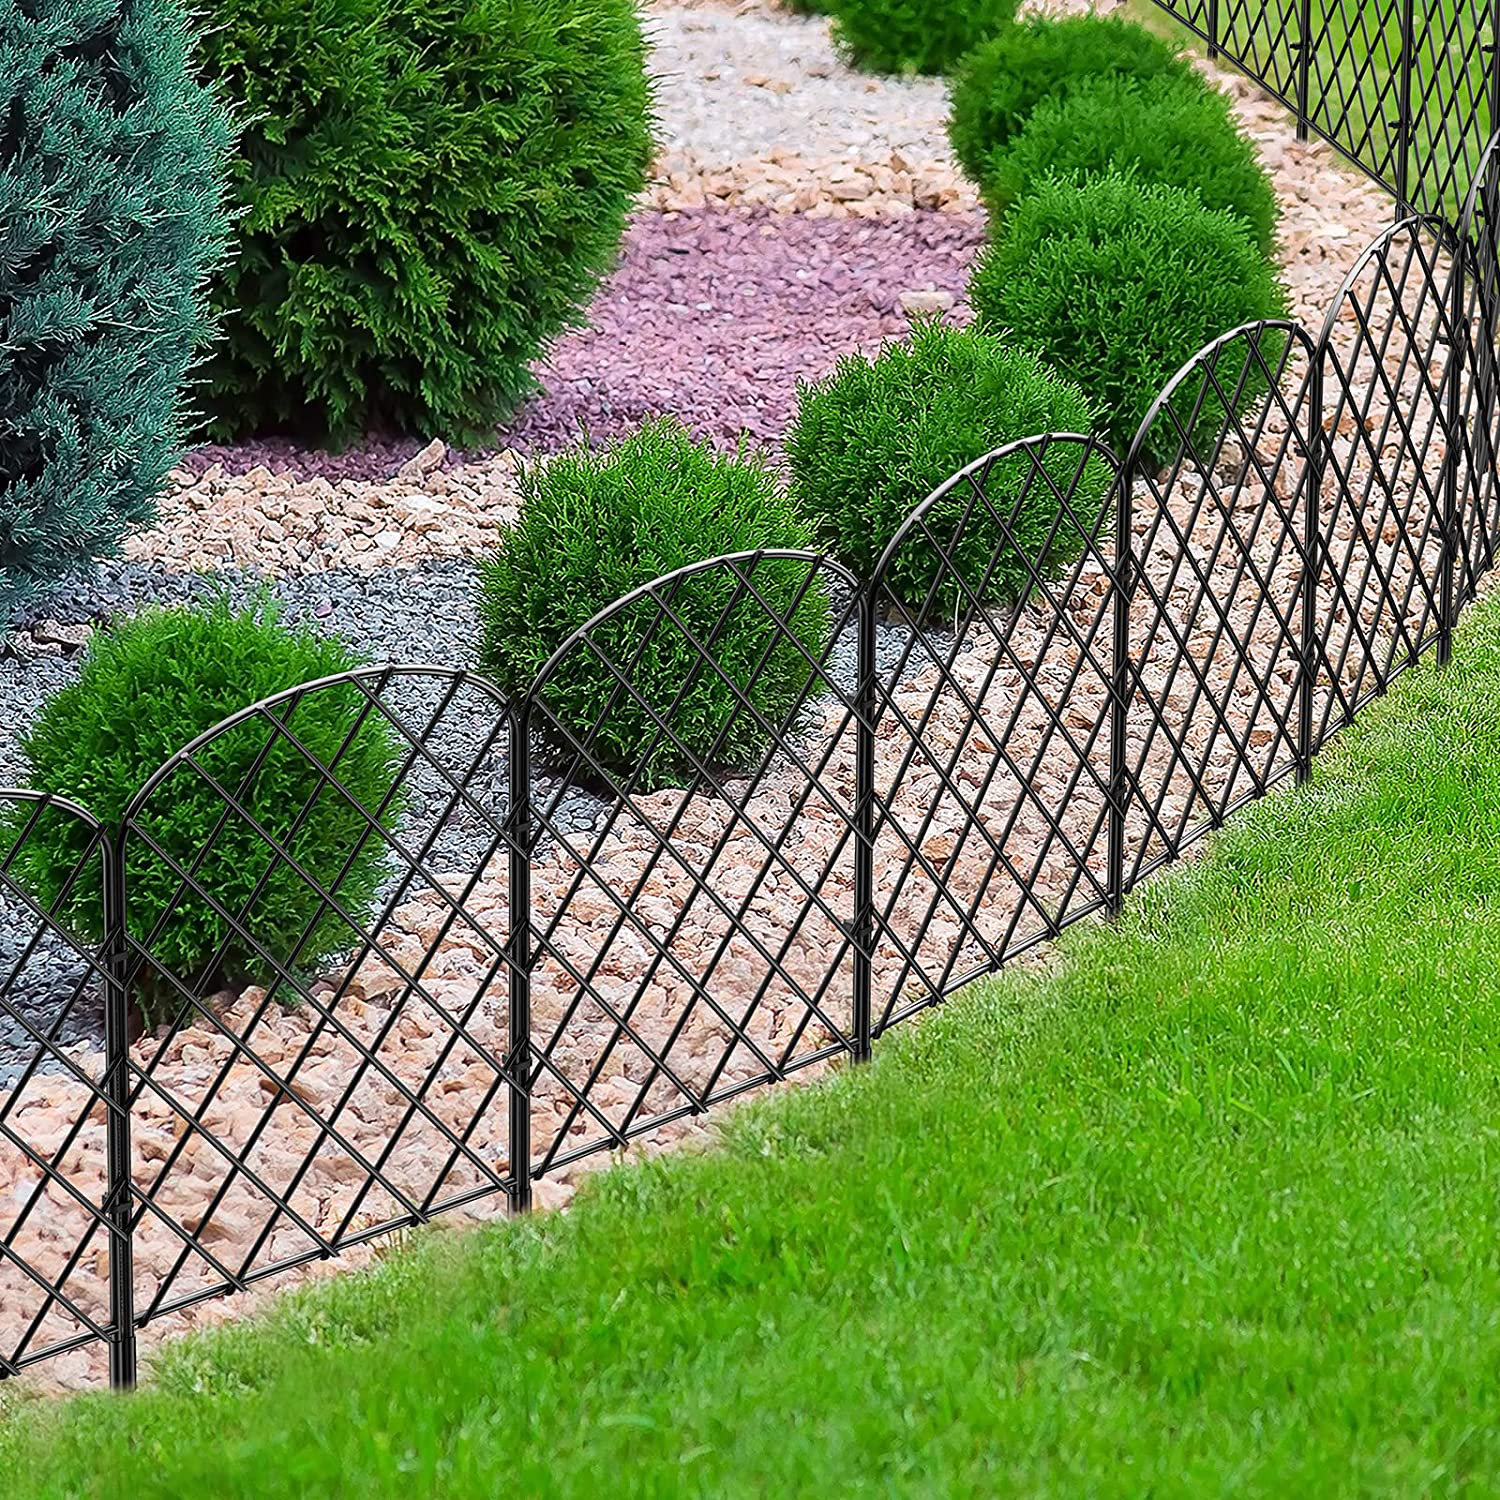 Welded Wire Garden Fences Make Your Garden Charming